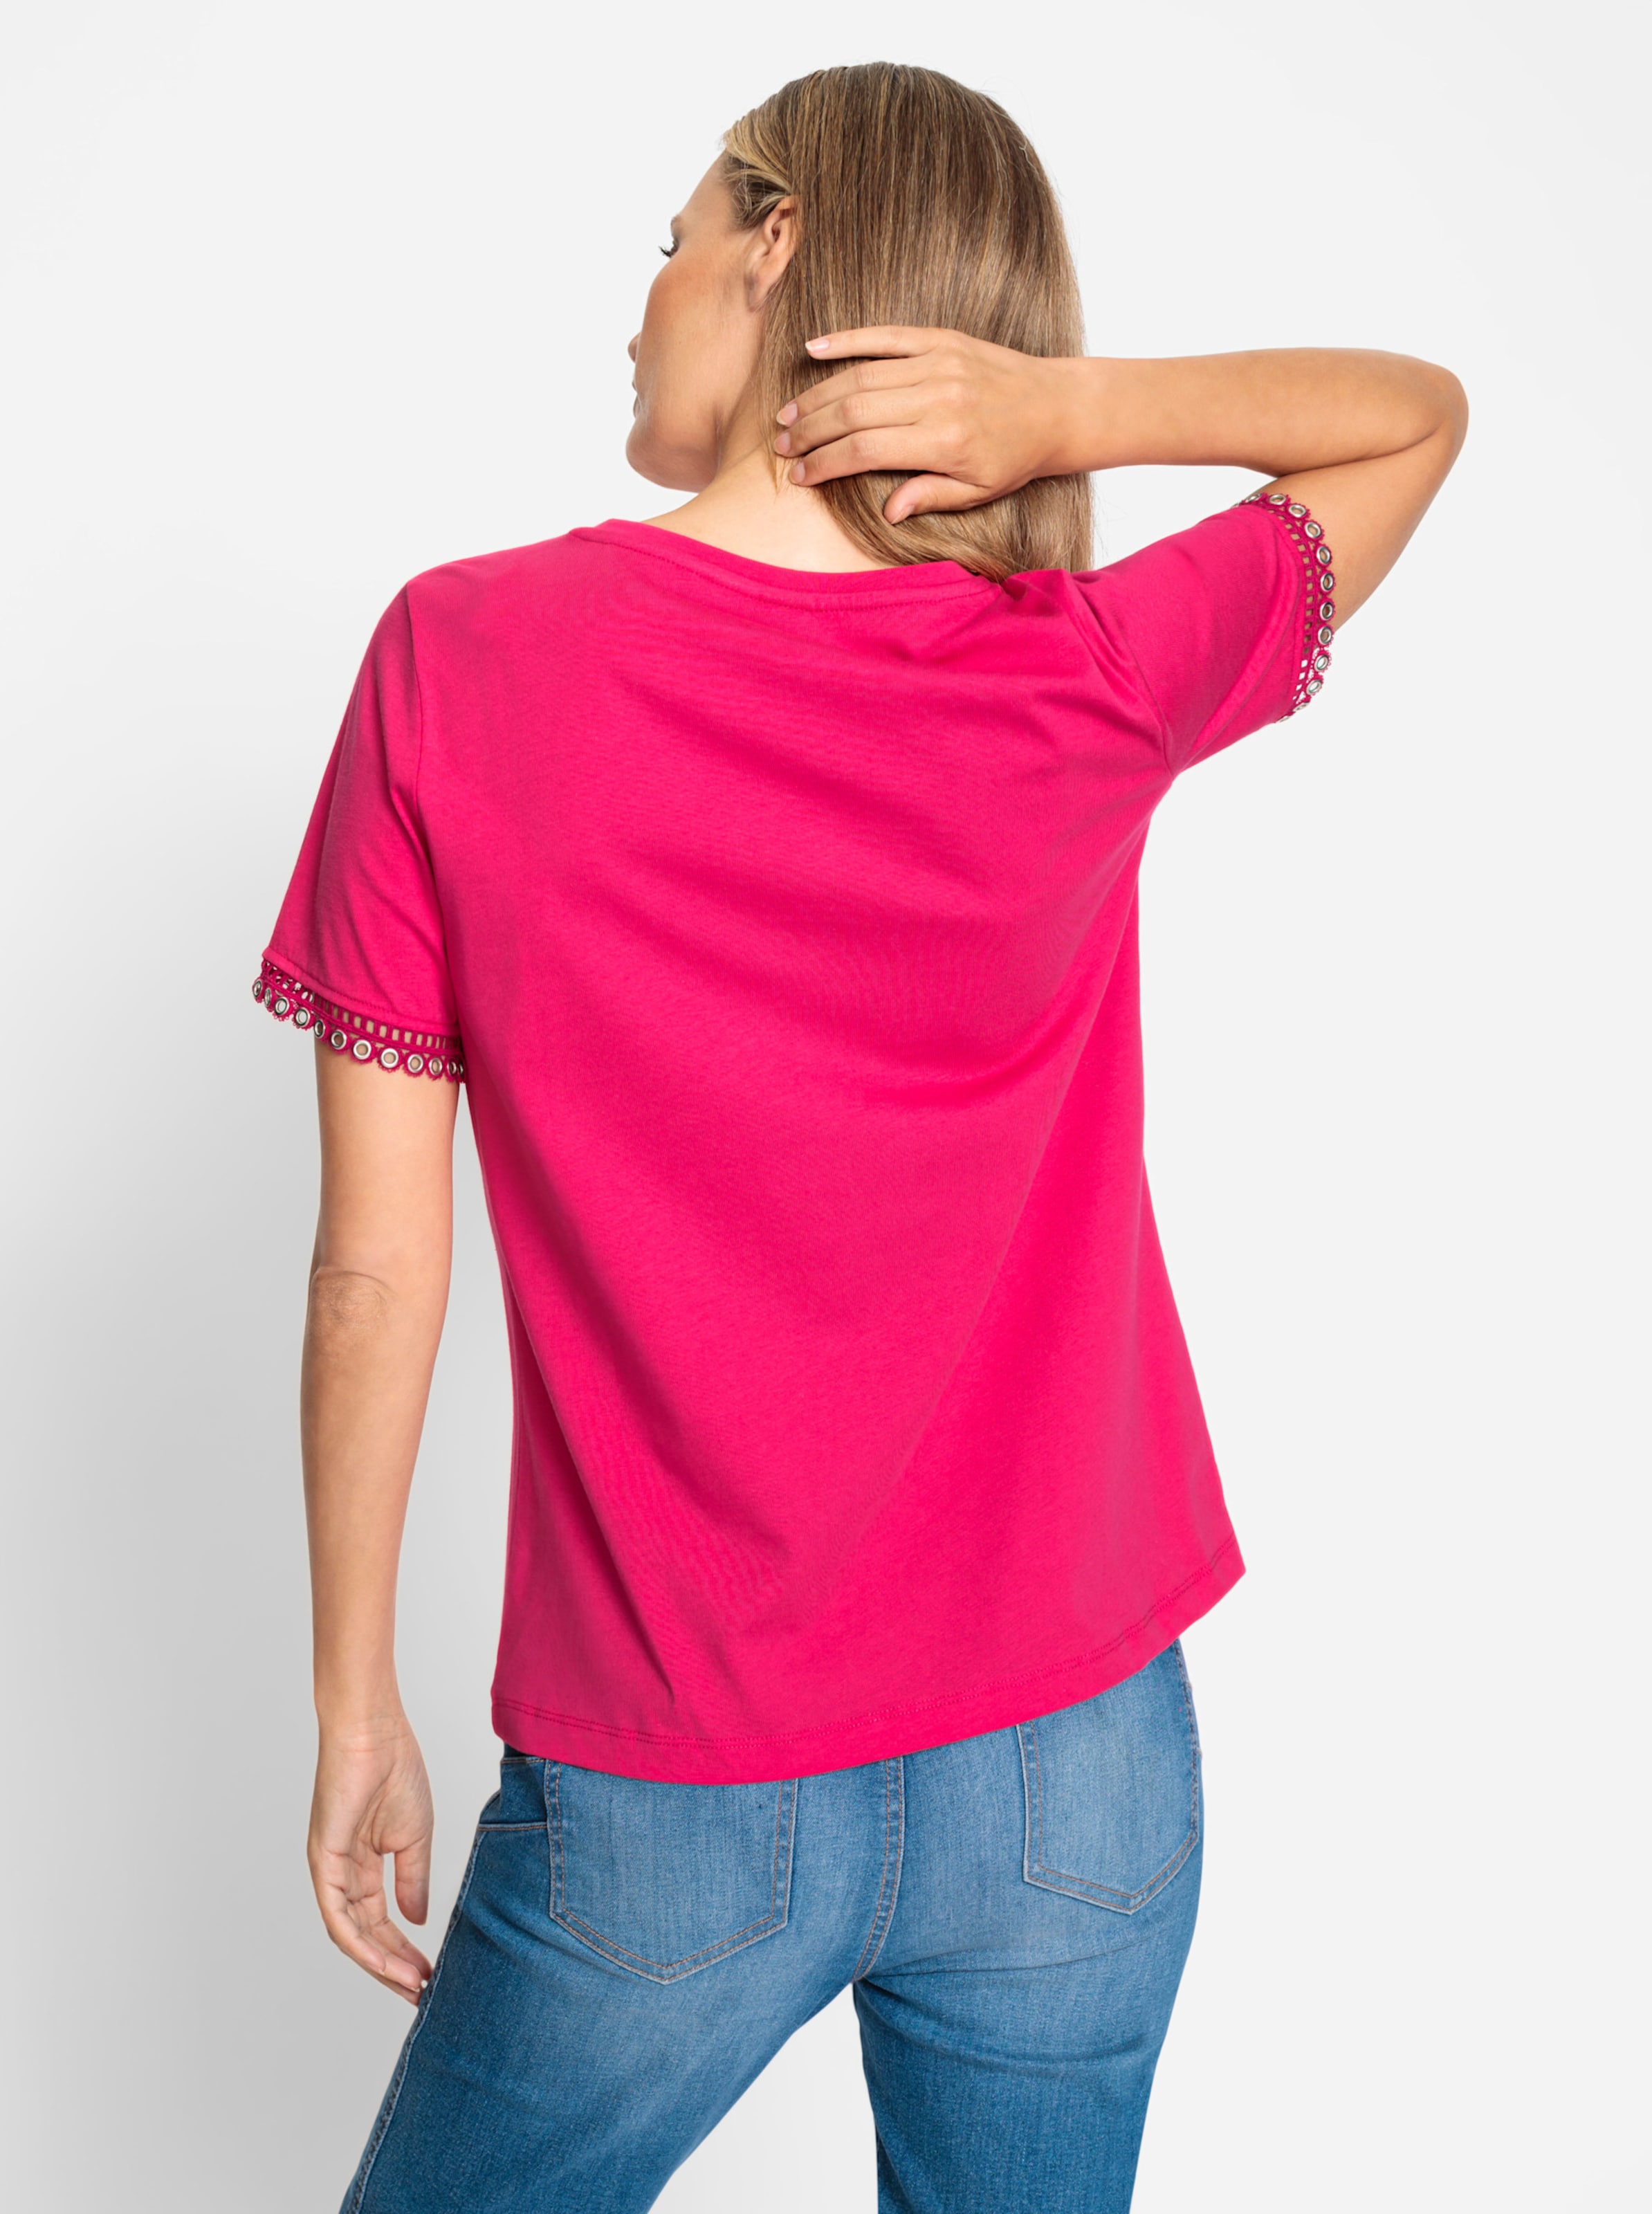 Metall Und günstig Kaufen-Shirt in pink von heine. Shirt in pink von heine <![CDATA[Shirt Basic-Style mit modischen Akzenten, mit Metallösen und Spitzenbesatz am Kurzarm. Mit Rundhals-Ausschnitt, Unterstützt die Initiative Cotton made in Africa.]]>. 